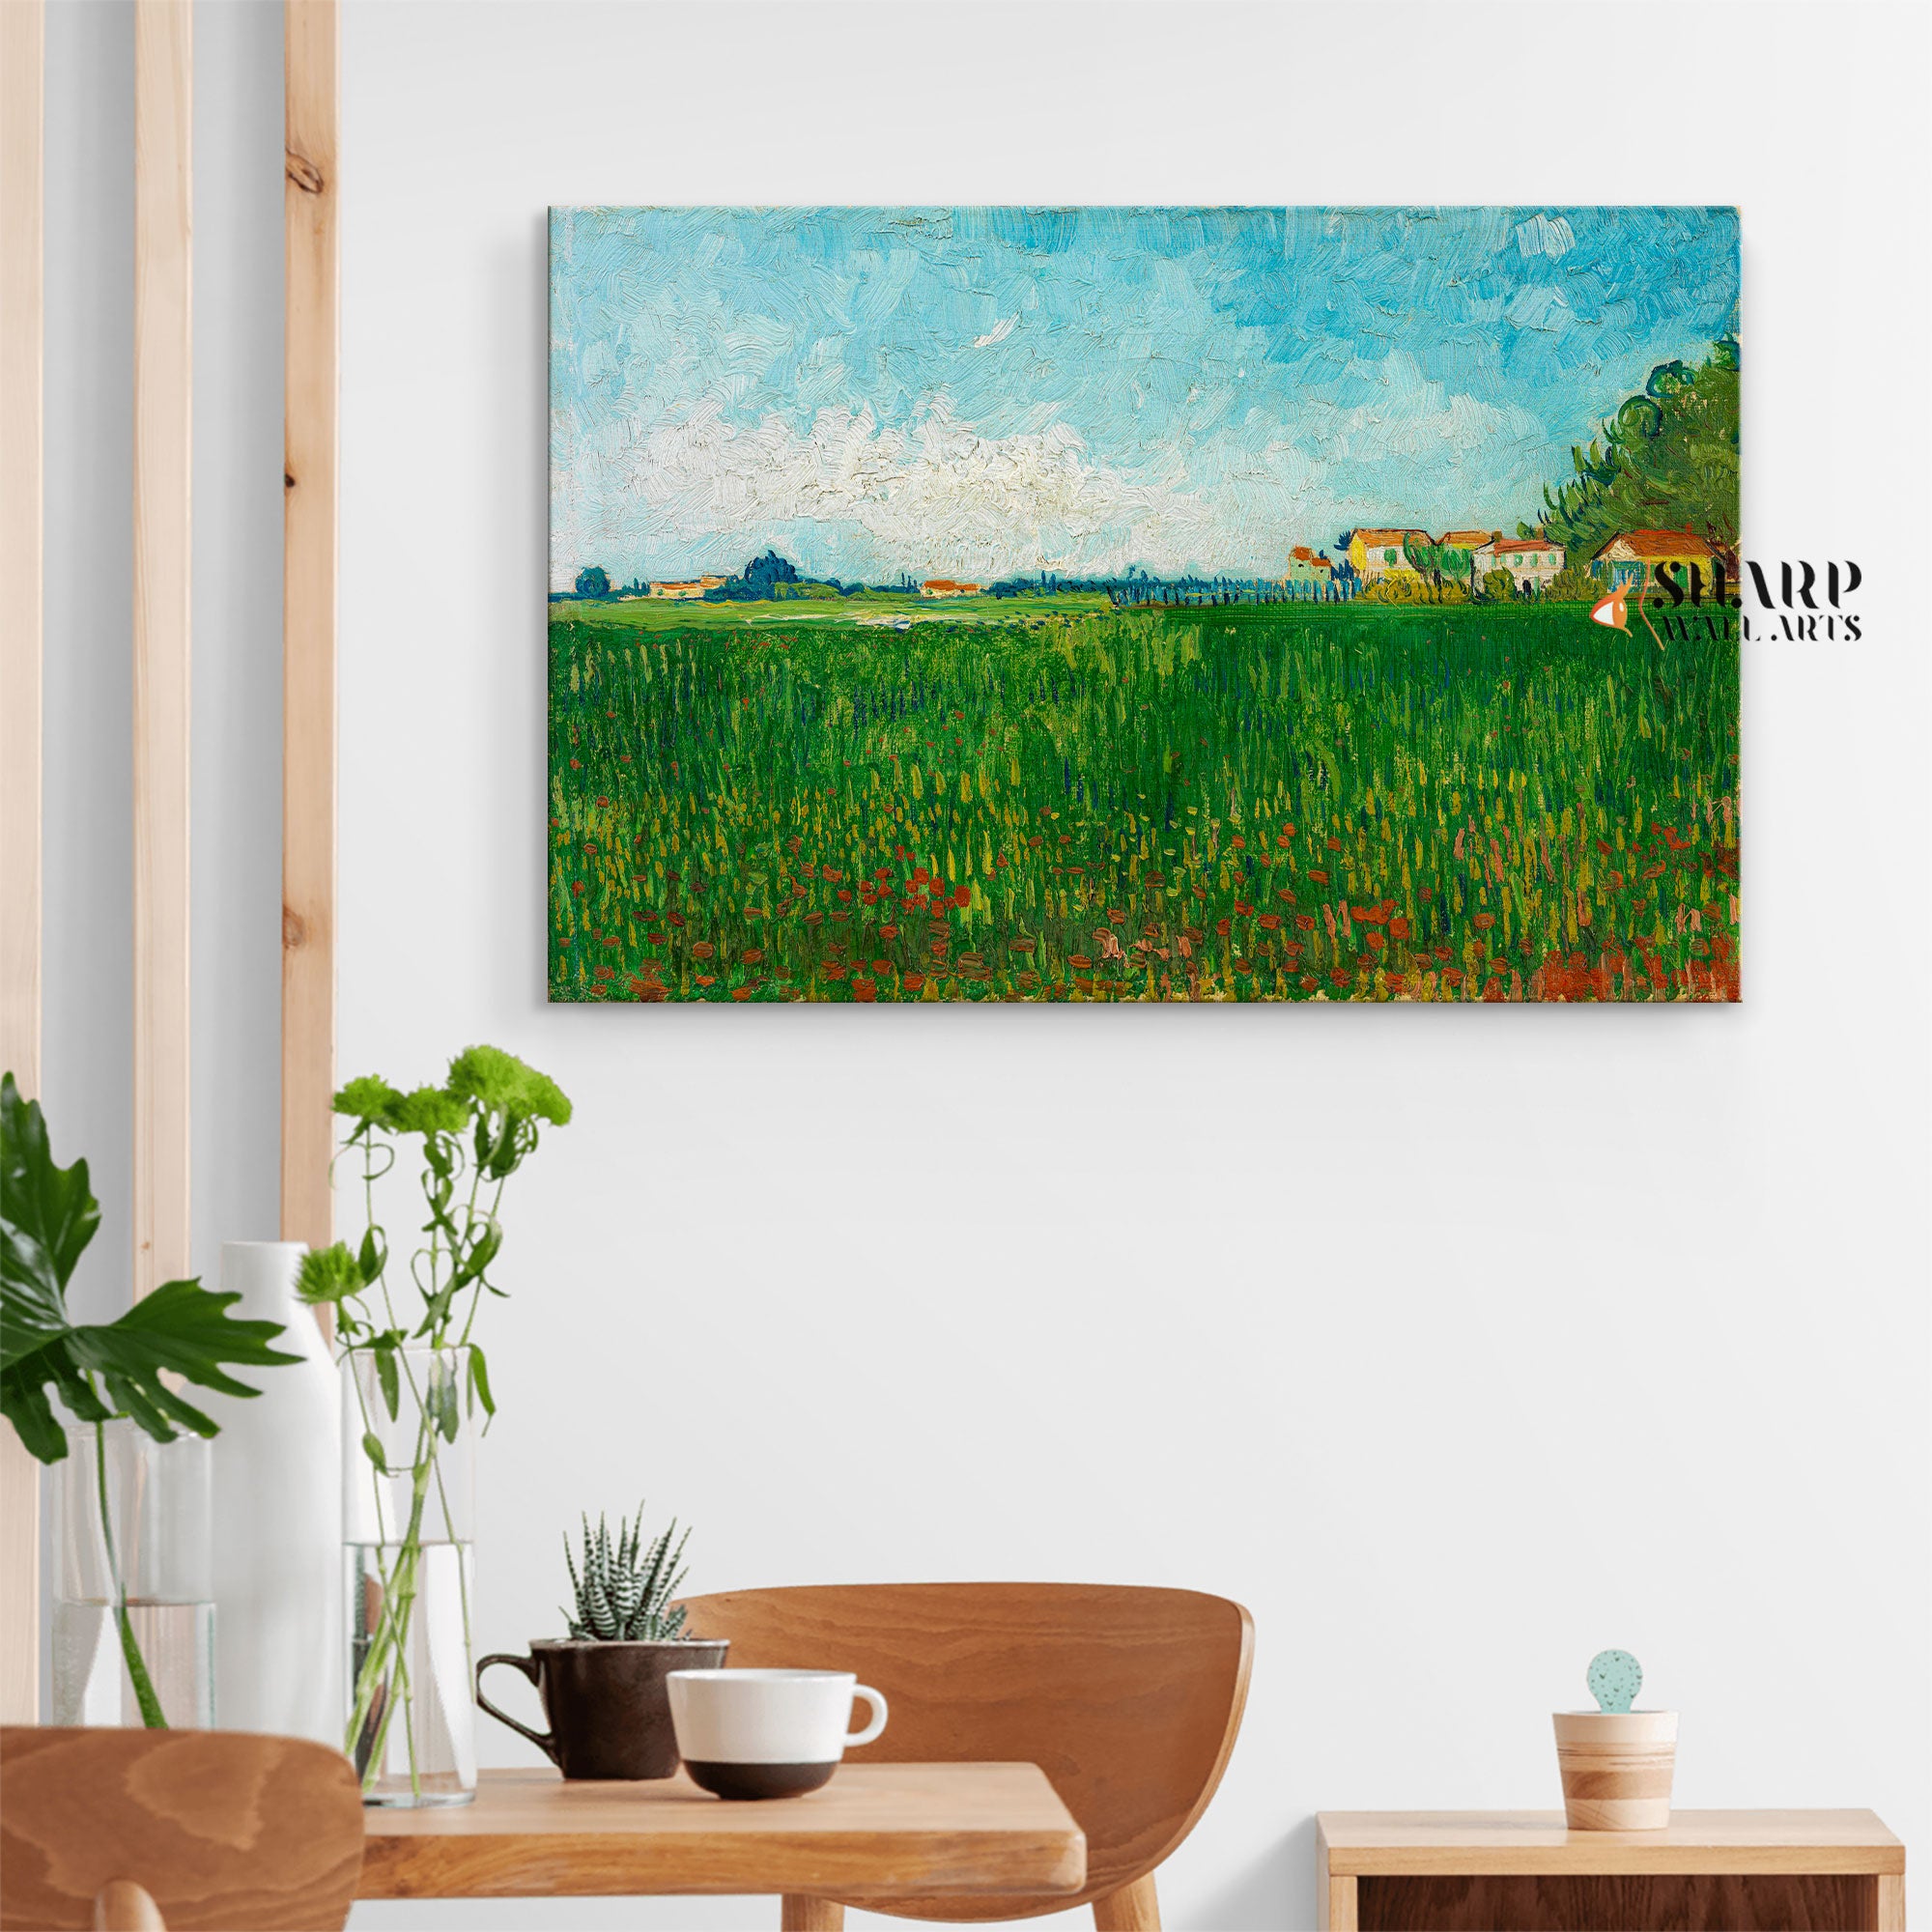 Vincent van Gogh Farmhouses In A Wheat Field Canvas Wall Art